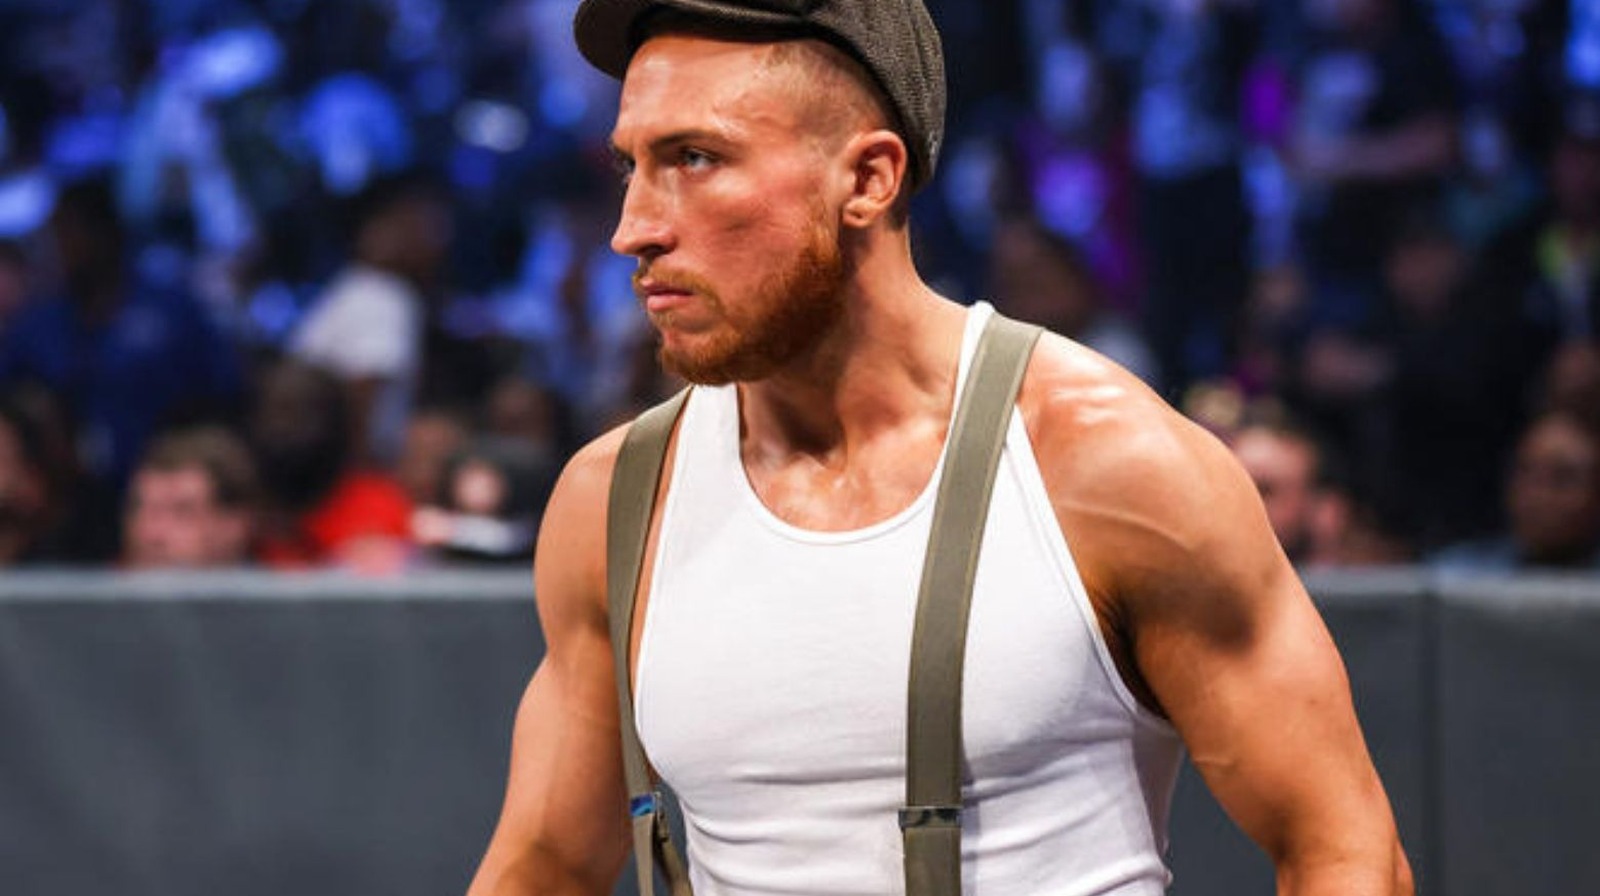 La estrella de la WWE Butch parece provocar el regreso al nombre anterior en el segmento de SmackDown entre bastidores